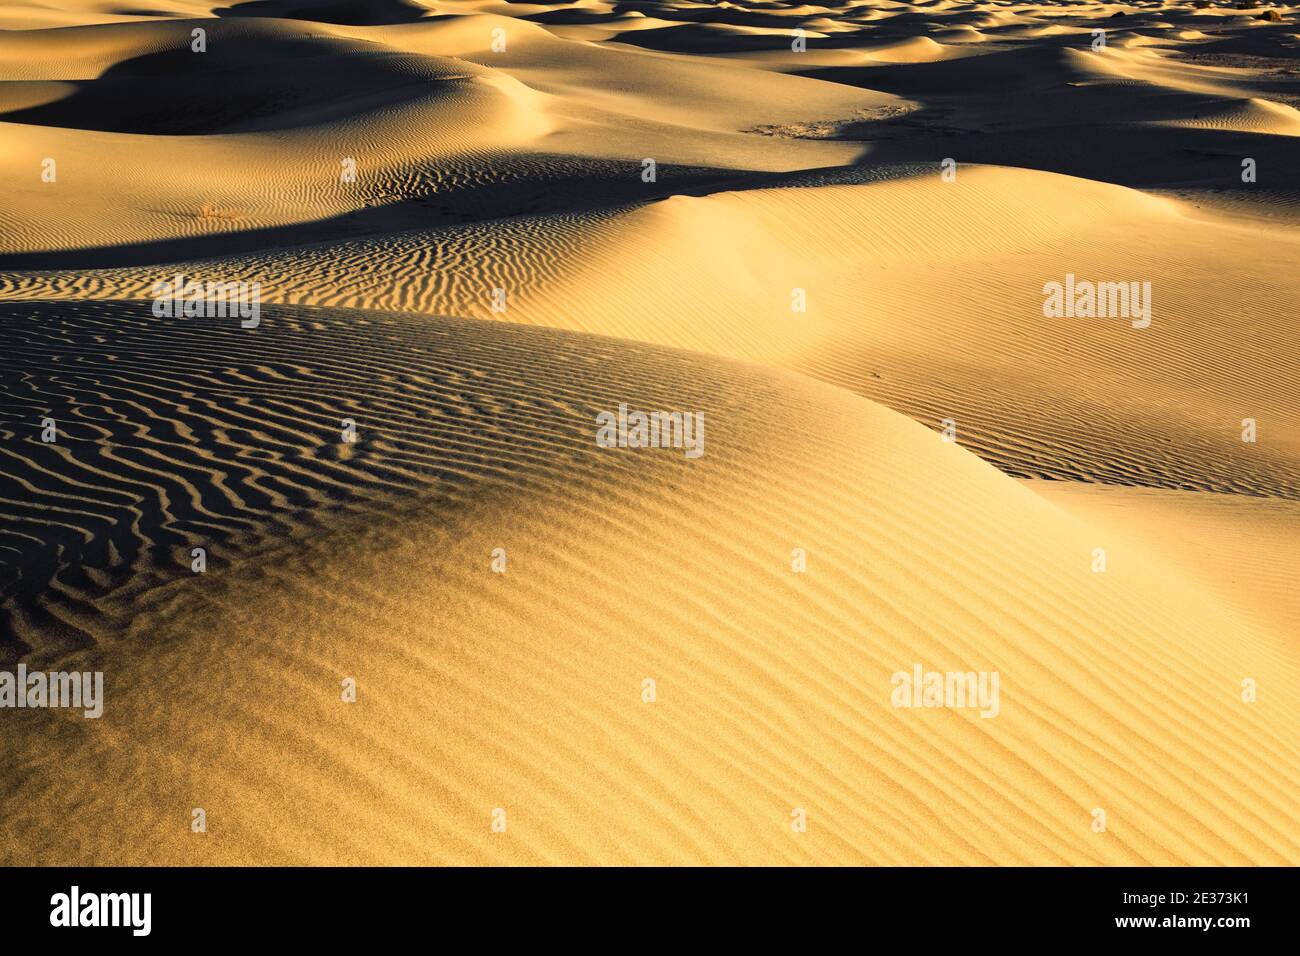 Dunes de sable de Mesquite Flats, dunes de sable, parc national de la Vallée de la mort, Californie, États-Unis Banque D'Images